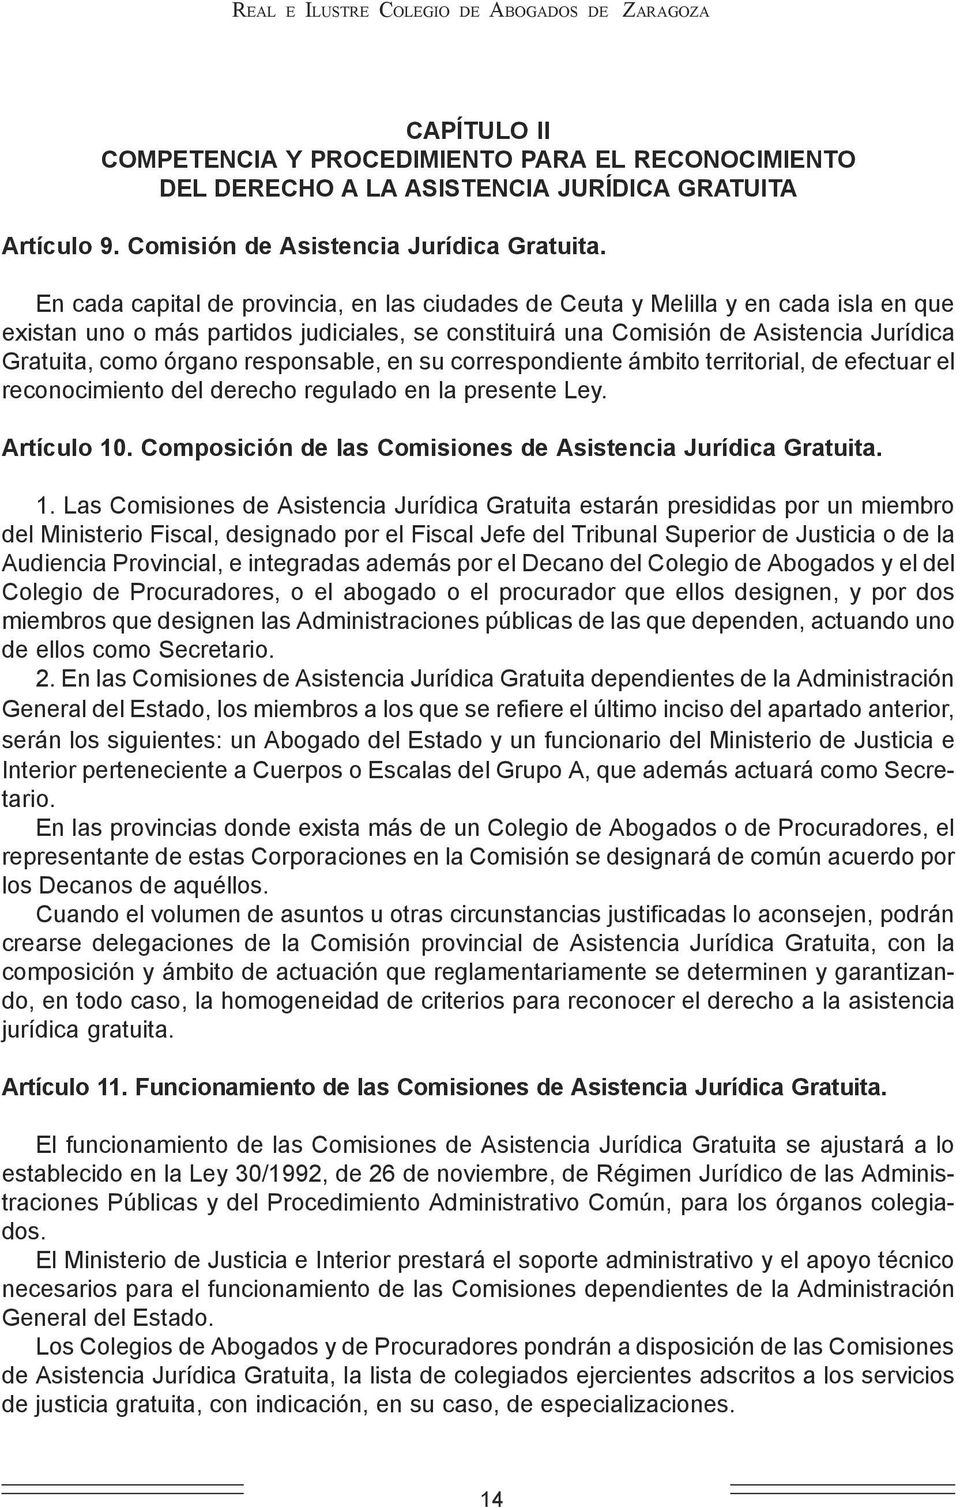 En cada capital de provincia, en las ciudades de Ceuta y Melilla y en cada isla en que existan uno o más partidos judiciales, se constituirá una Comisión de Asistencia Jurídica Gratuita, como órgano